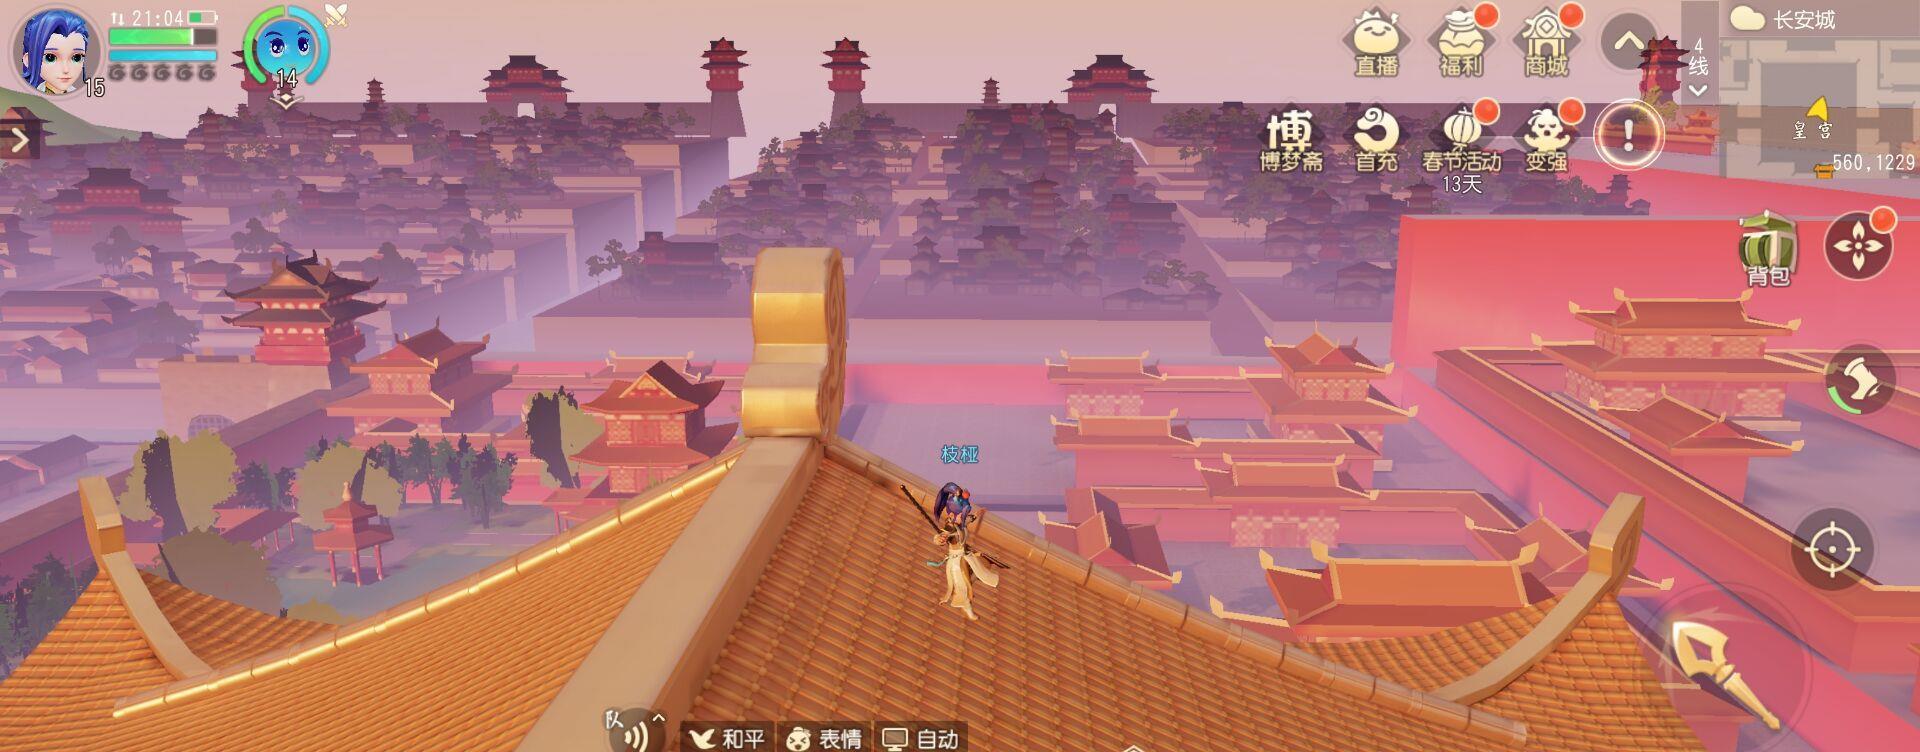 《梦幻西游三维版》:长安城有怎样的风景?楼顶才看得真切